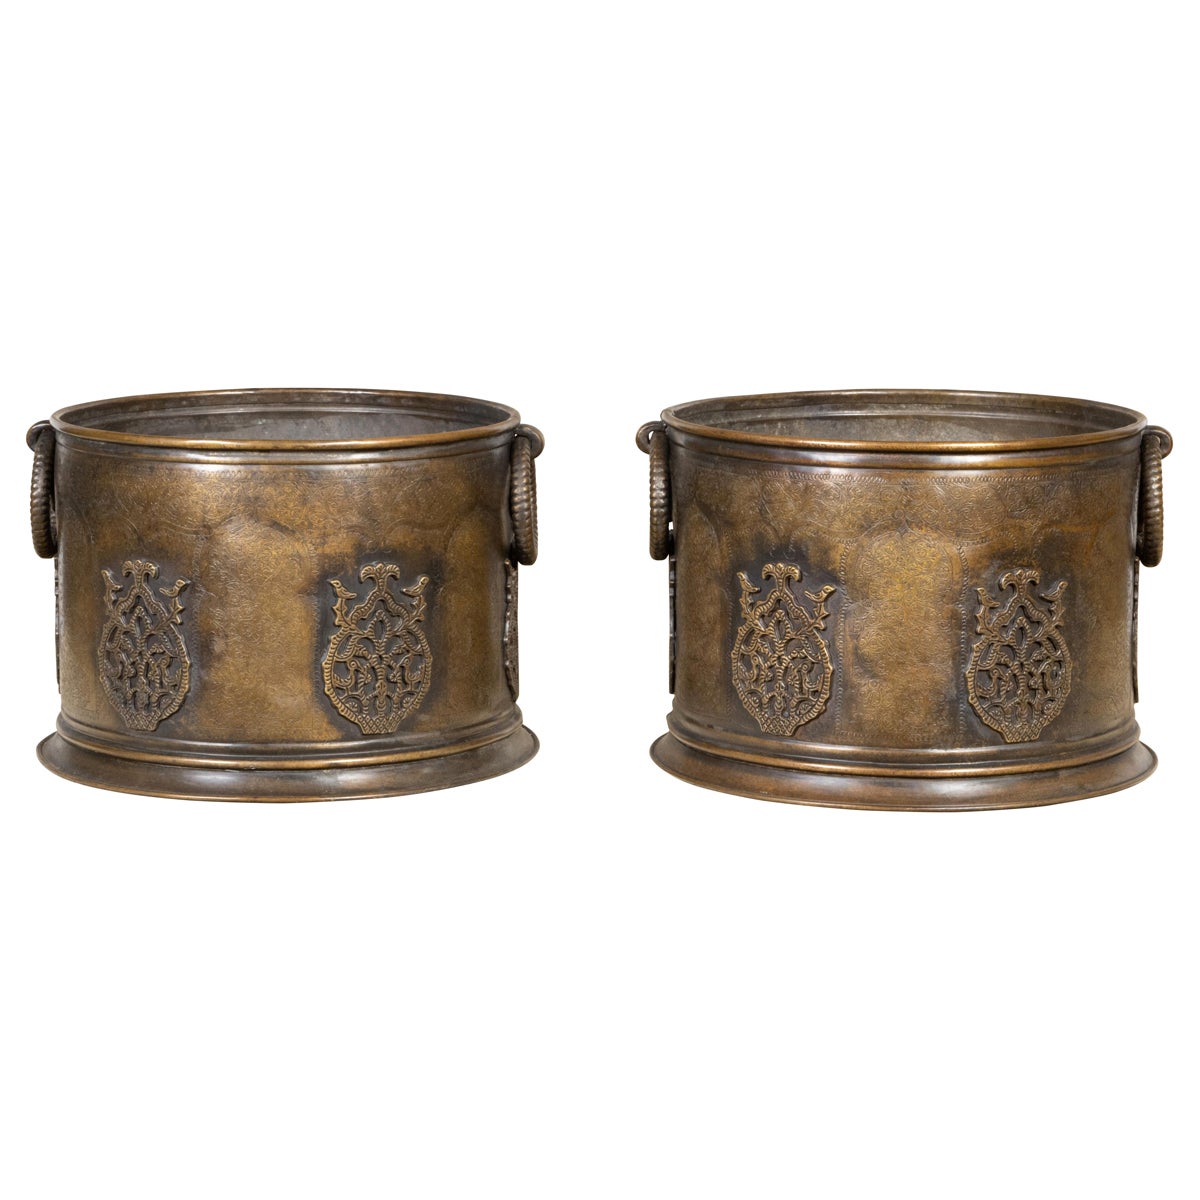 Paire de cache-pots en cuivre anglais des années 1920 avec décor de feuillage gravé